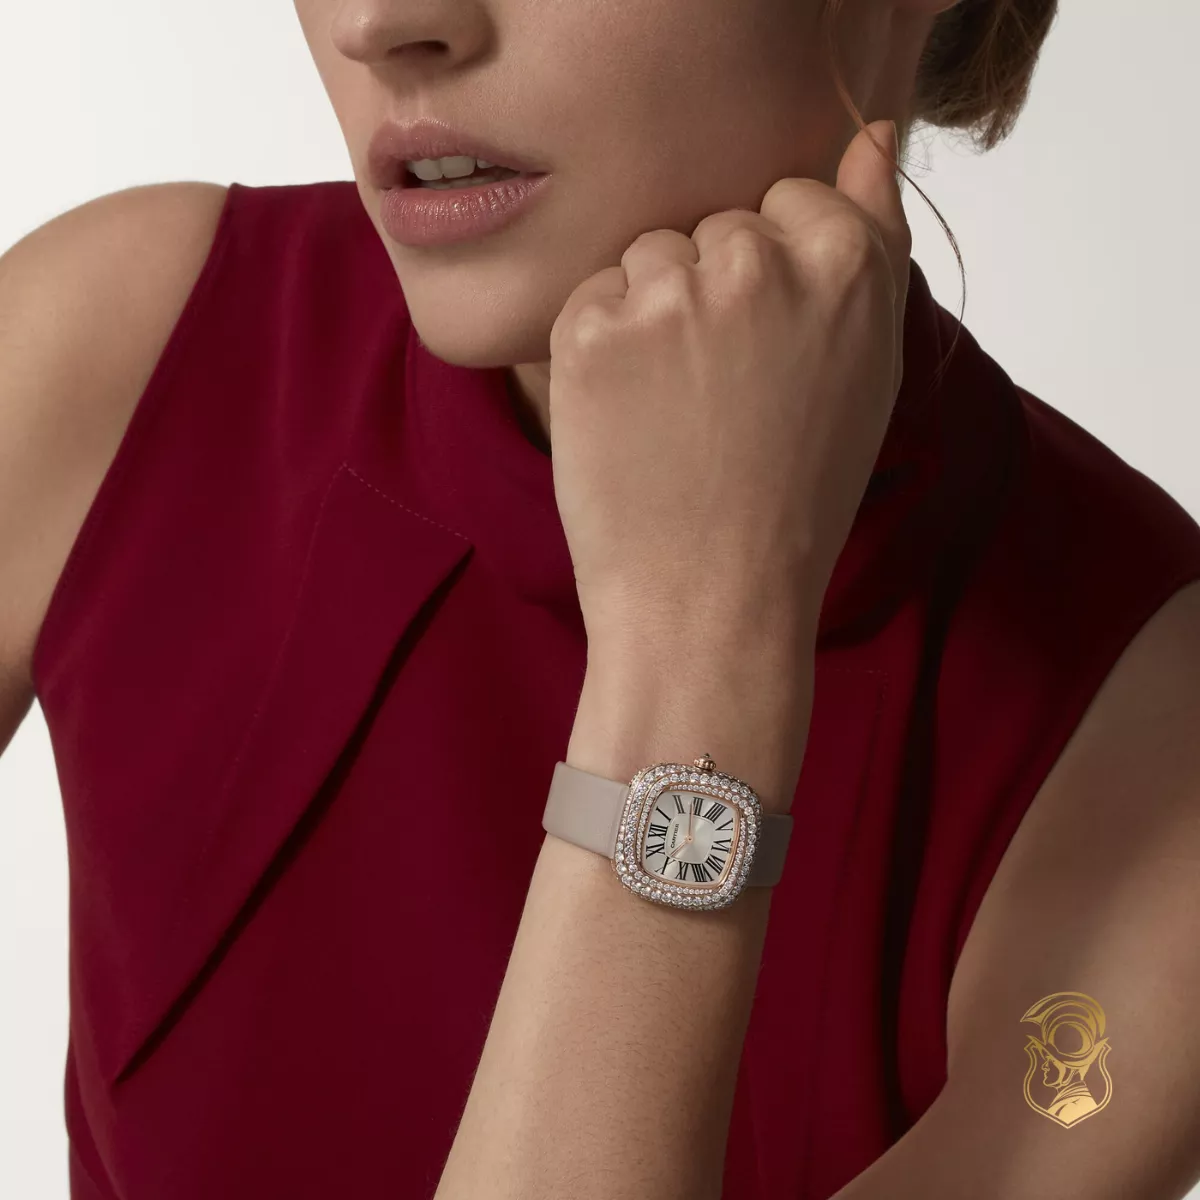 Cartier Coussin WJCS0005 Diamonds Watch 30.4 x 31.1mm